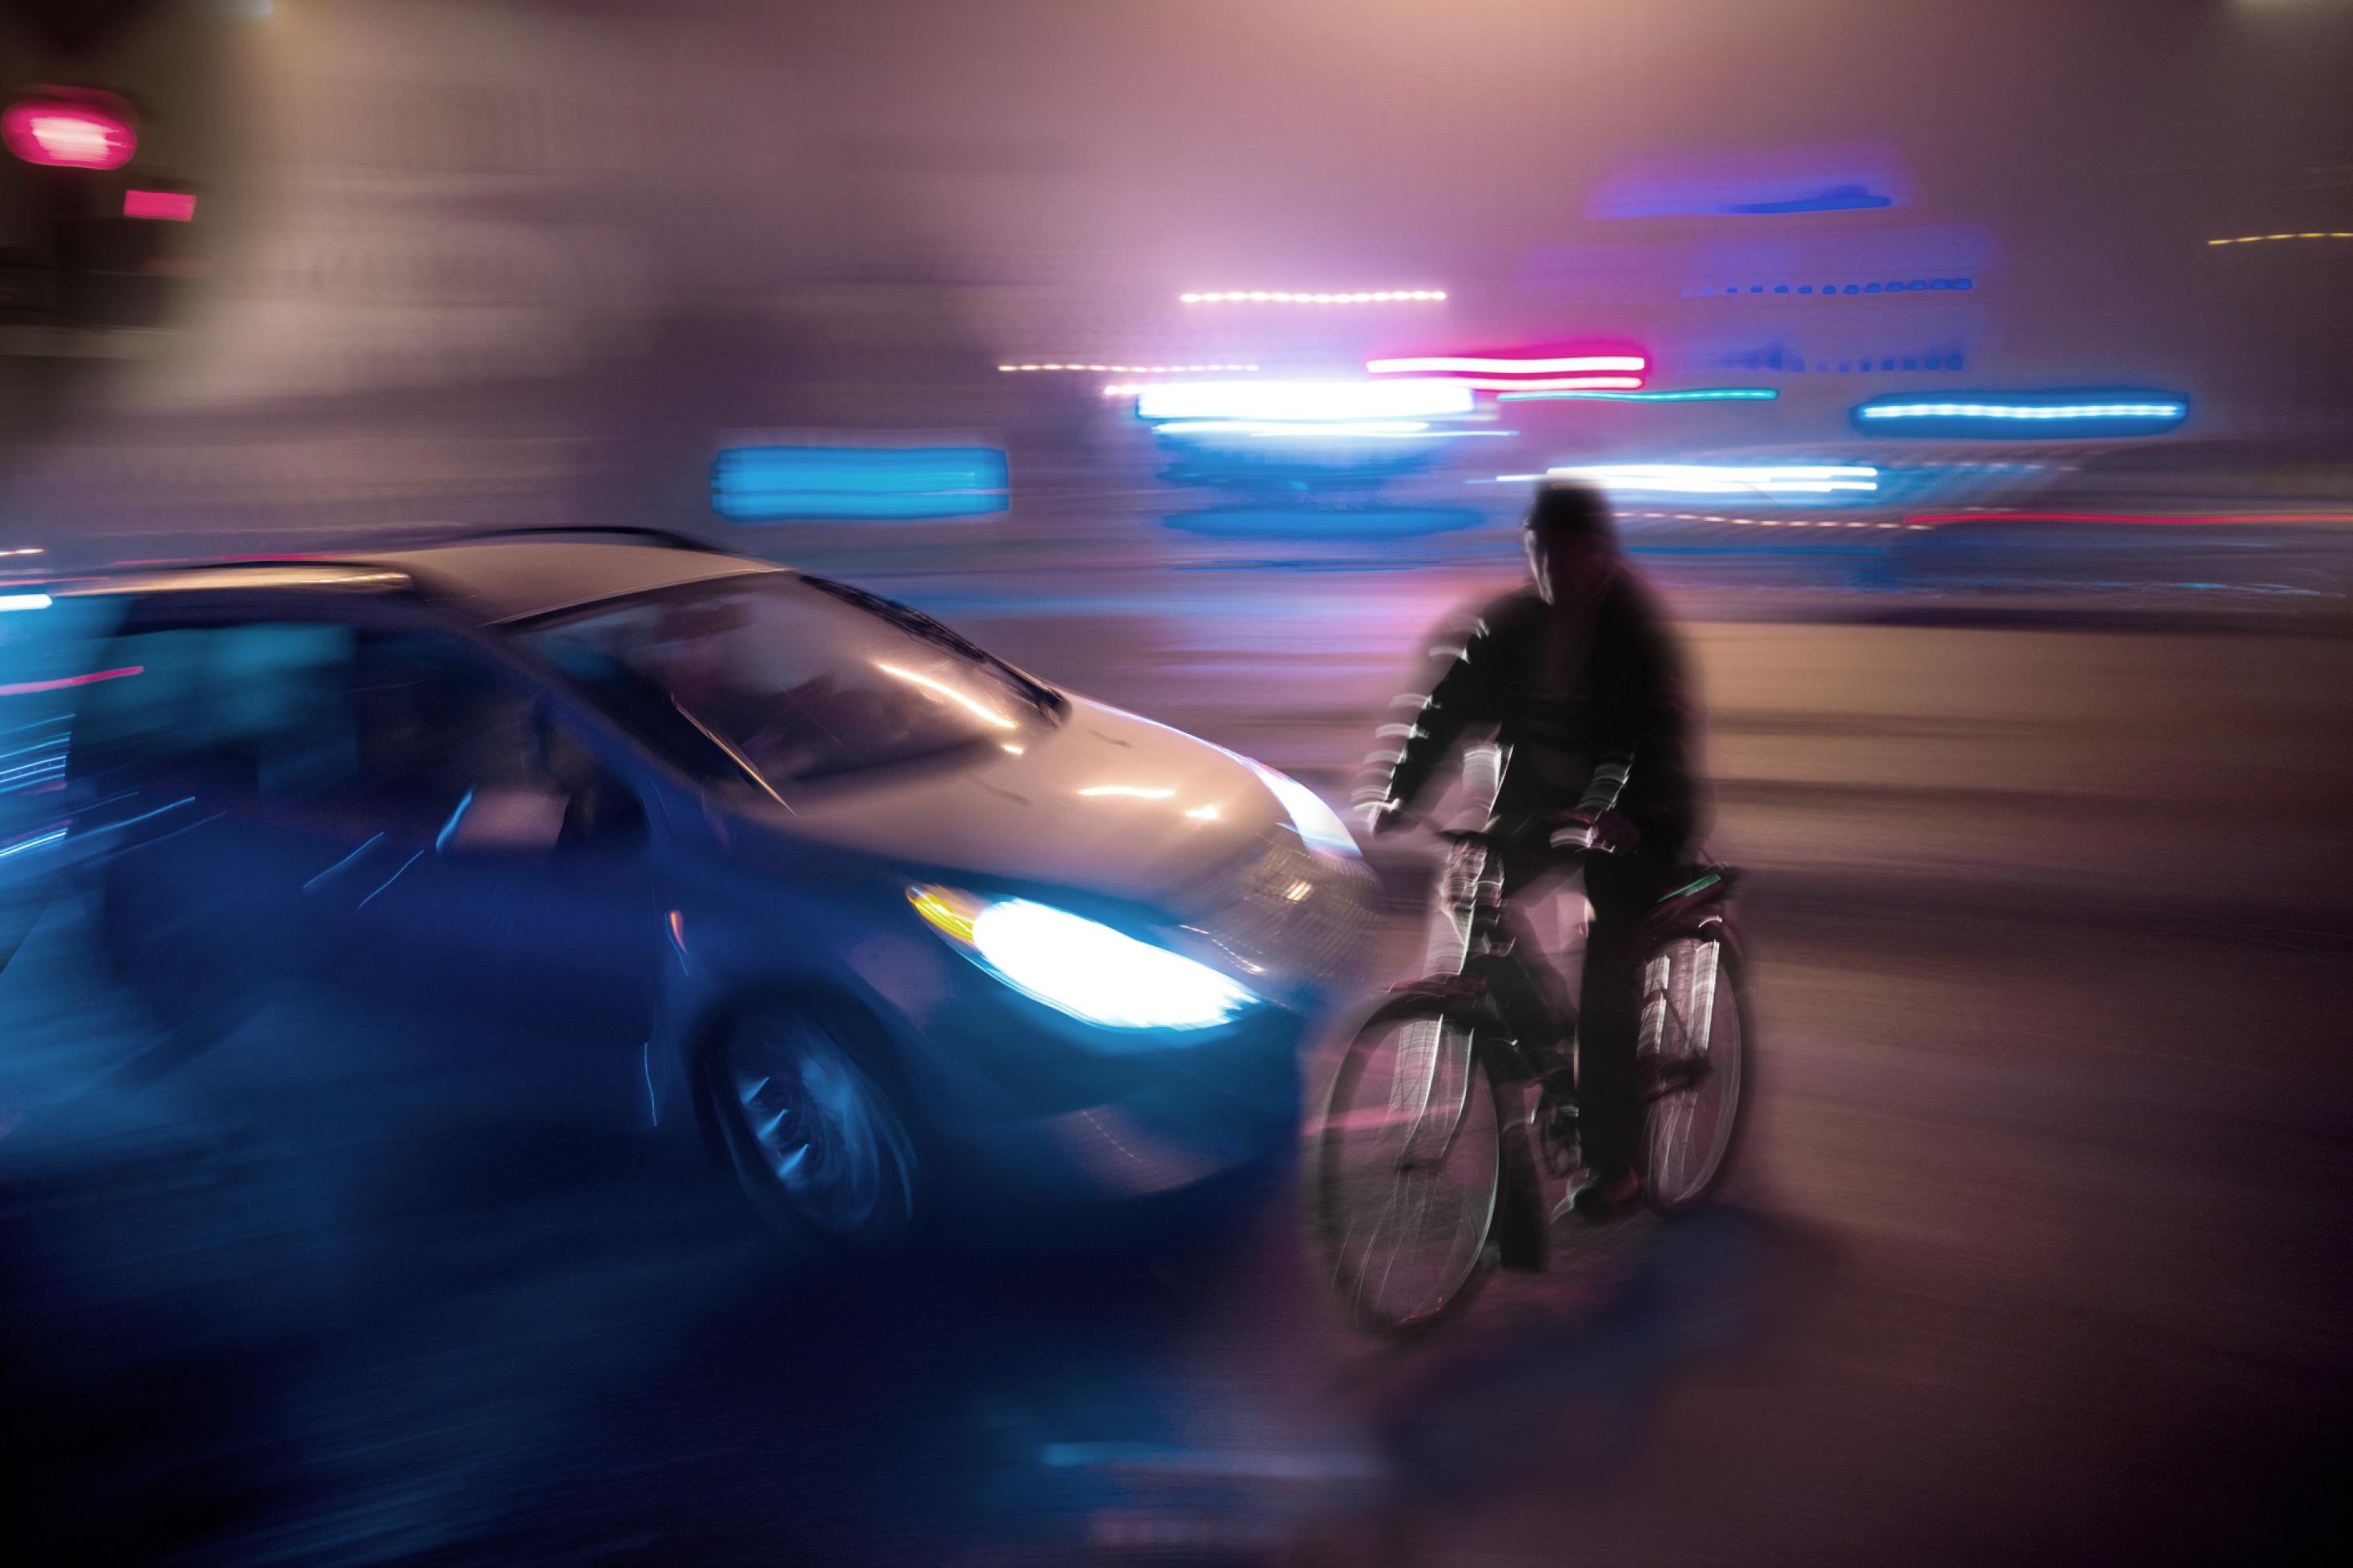 Bei Nacht: Ein Auto schneidet knapp einen Fahrradfahrer, der die Straße überquert. Die Straße ist im Vordergrund dunkel, im Hintergrund leuchten hellblaue und rote Lichter im Strobo-Effekt.